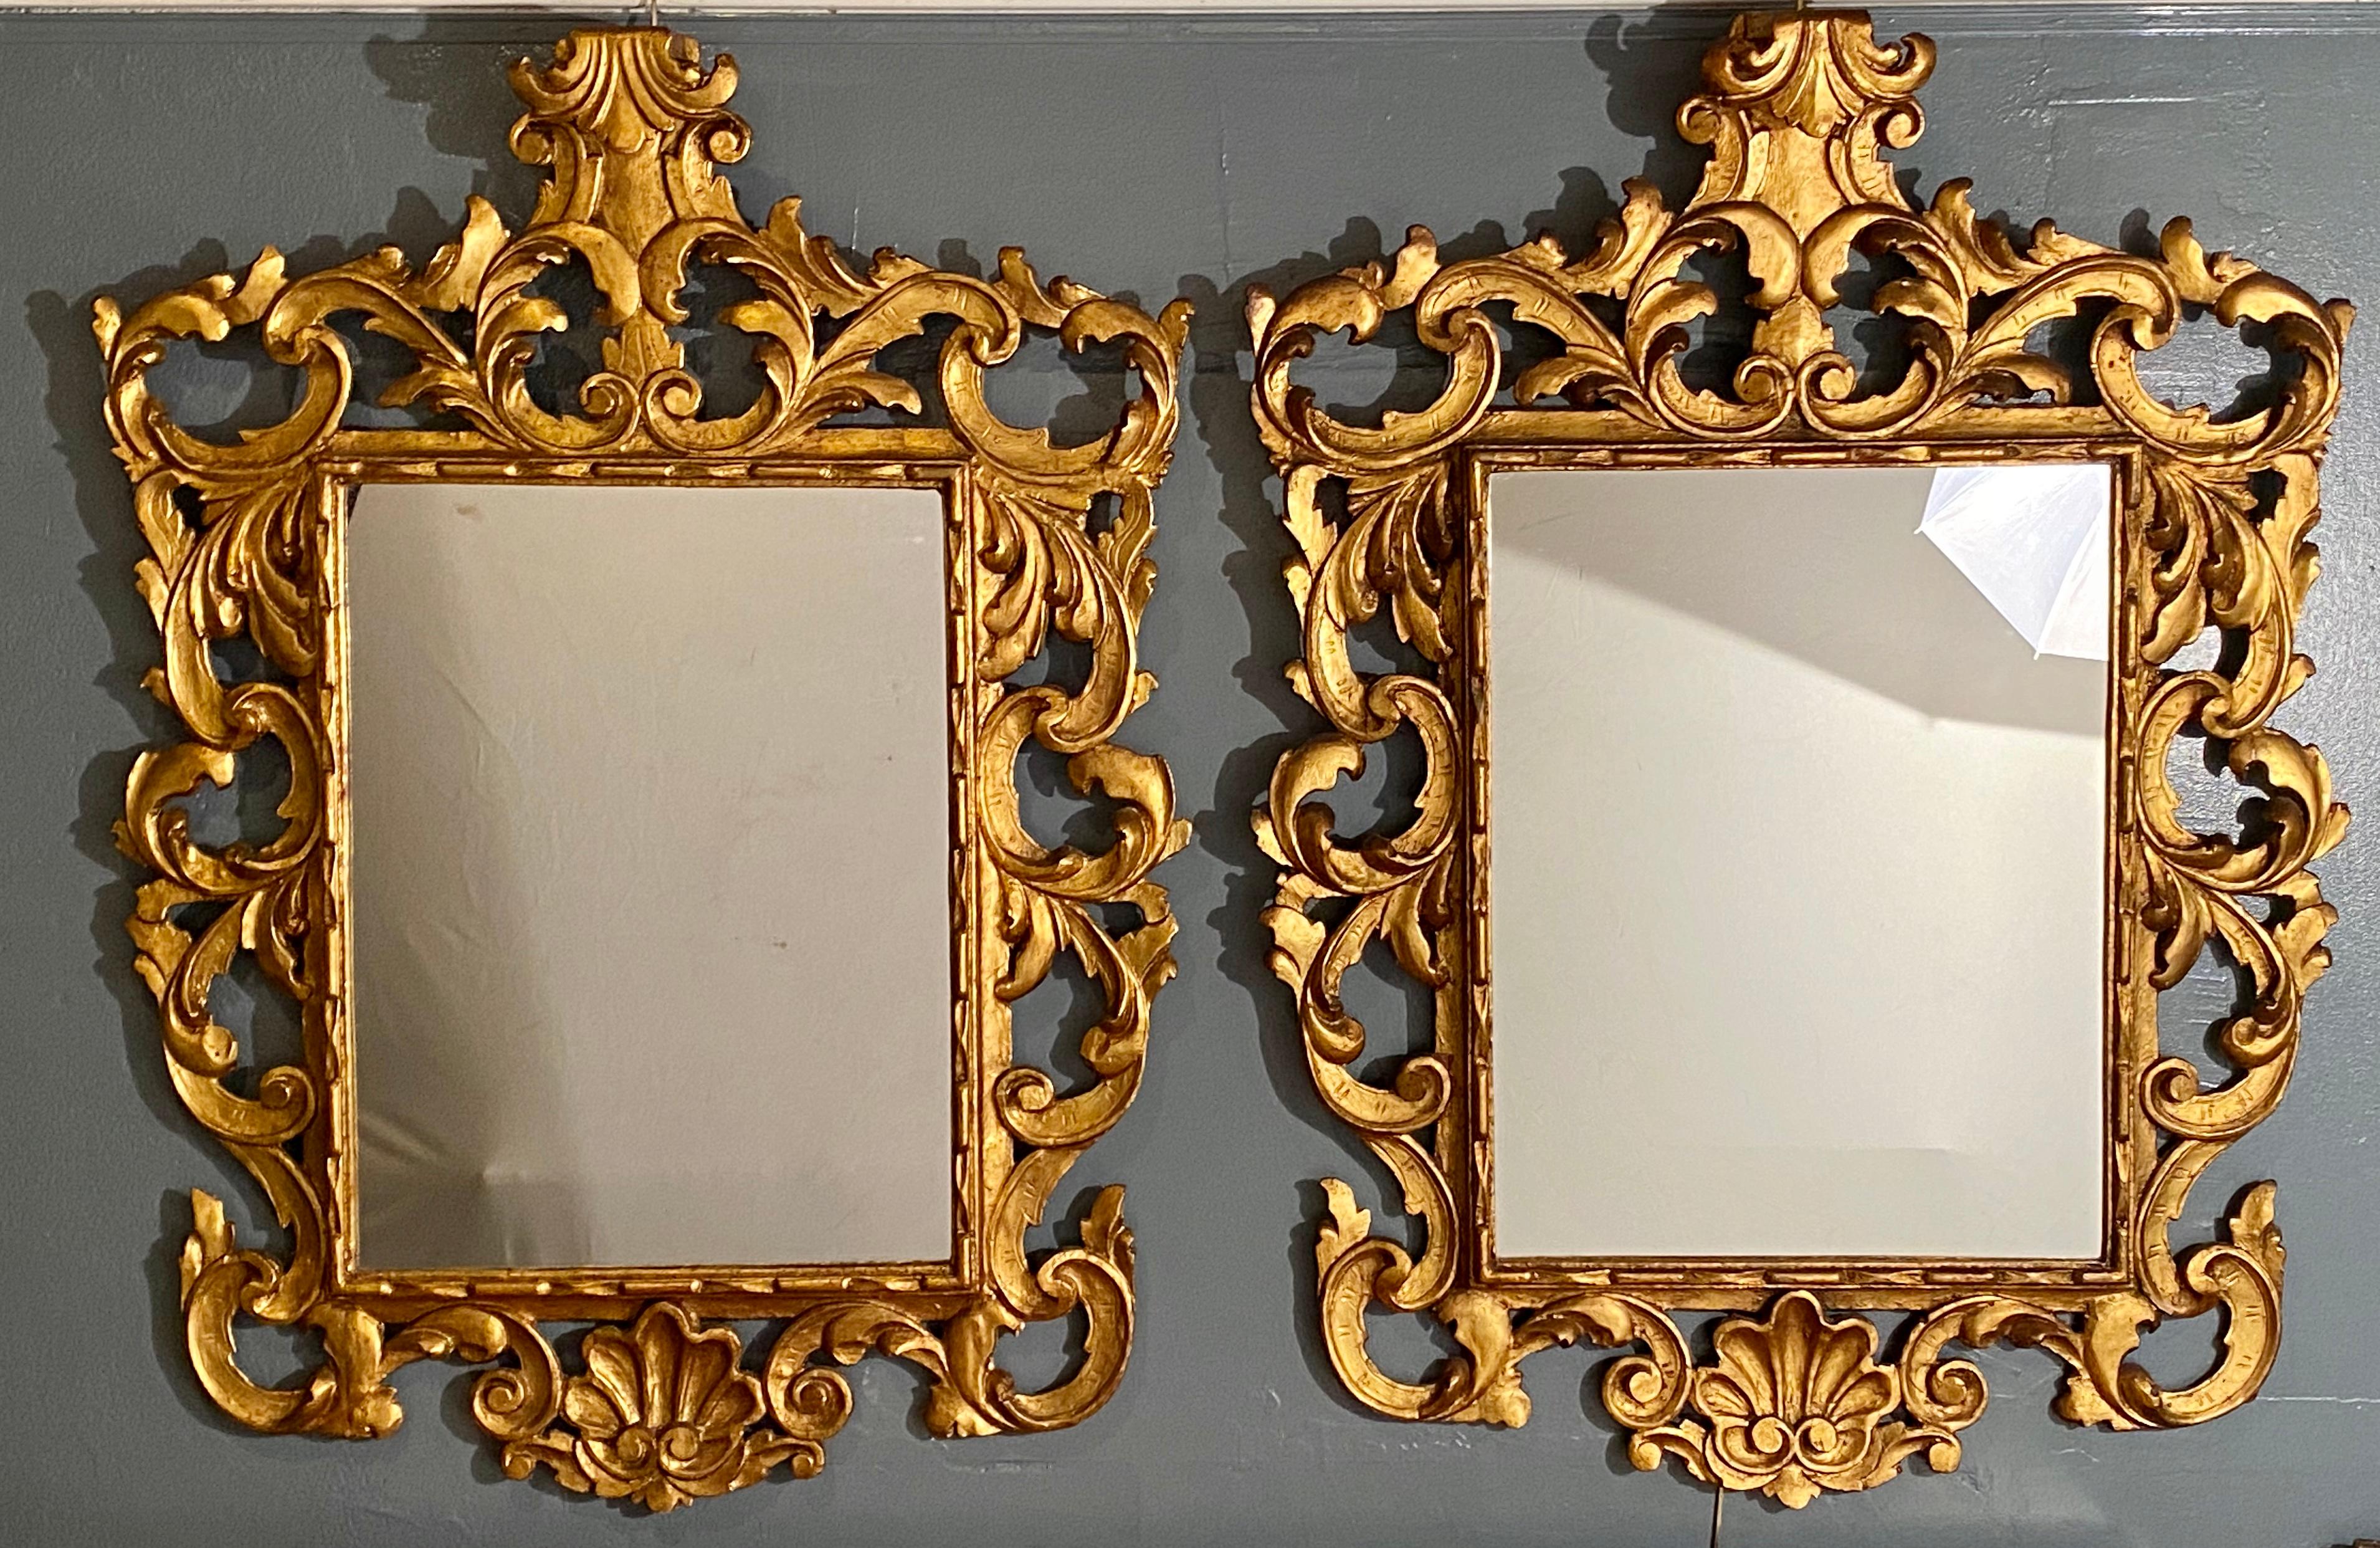 Paire de miroirs muraux ou de console de style Rococo. Cette fine paire de bois doré sculpté italien entoure ces panneaux de miroir central clair. Le design général reproduit l'ère Rococo à son apogée de style et de grâce. Les cadres présentent une